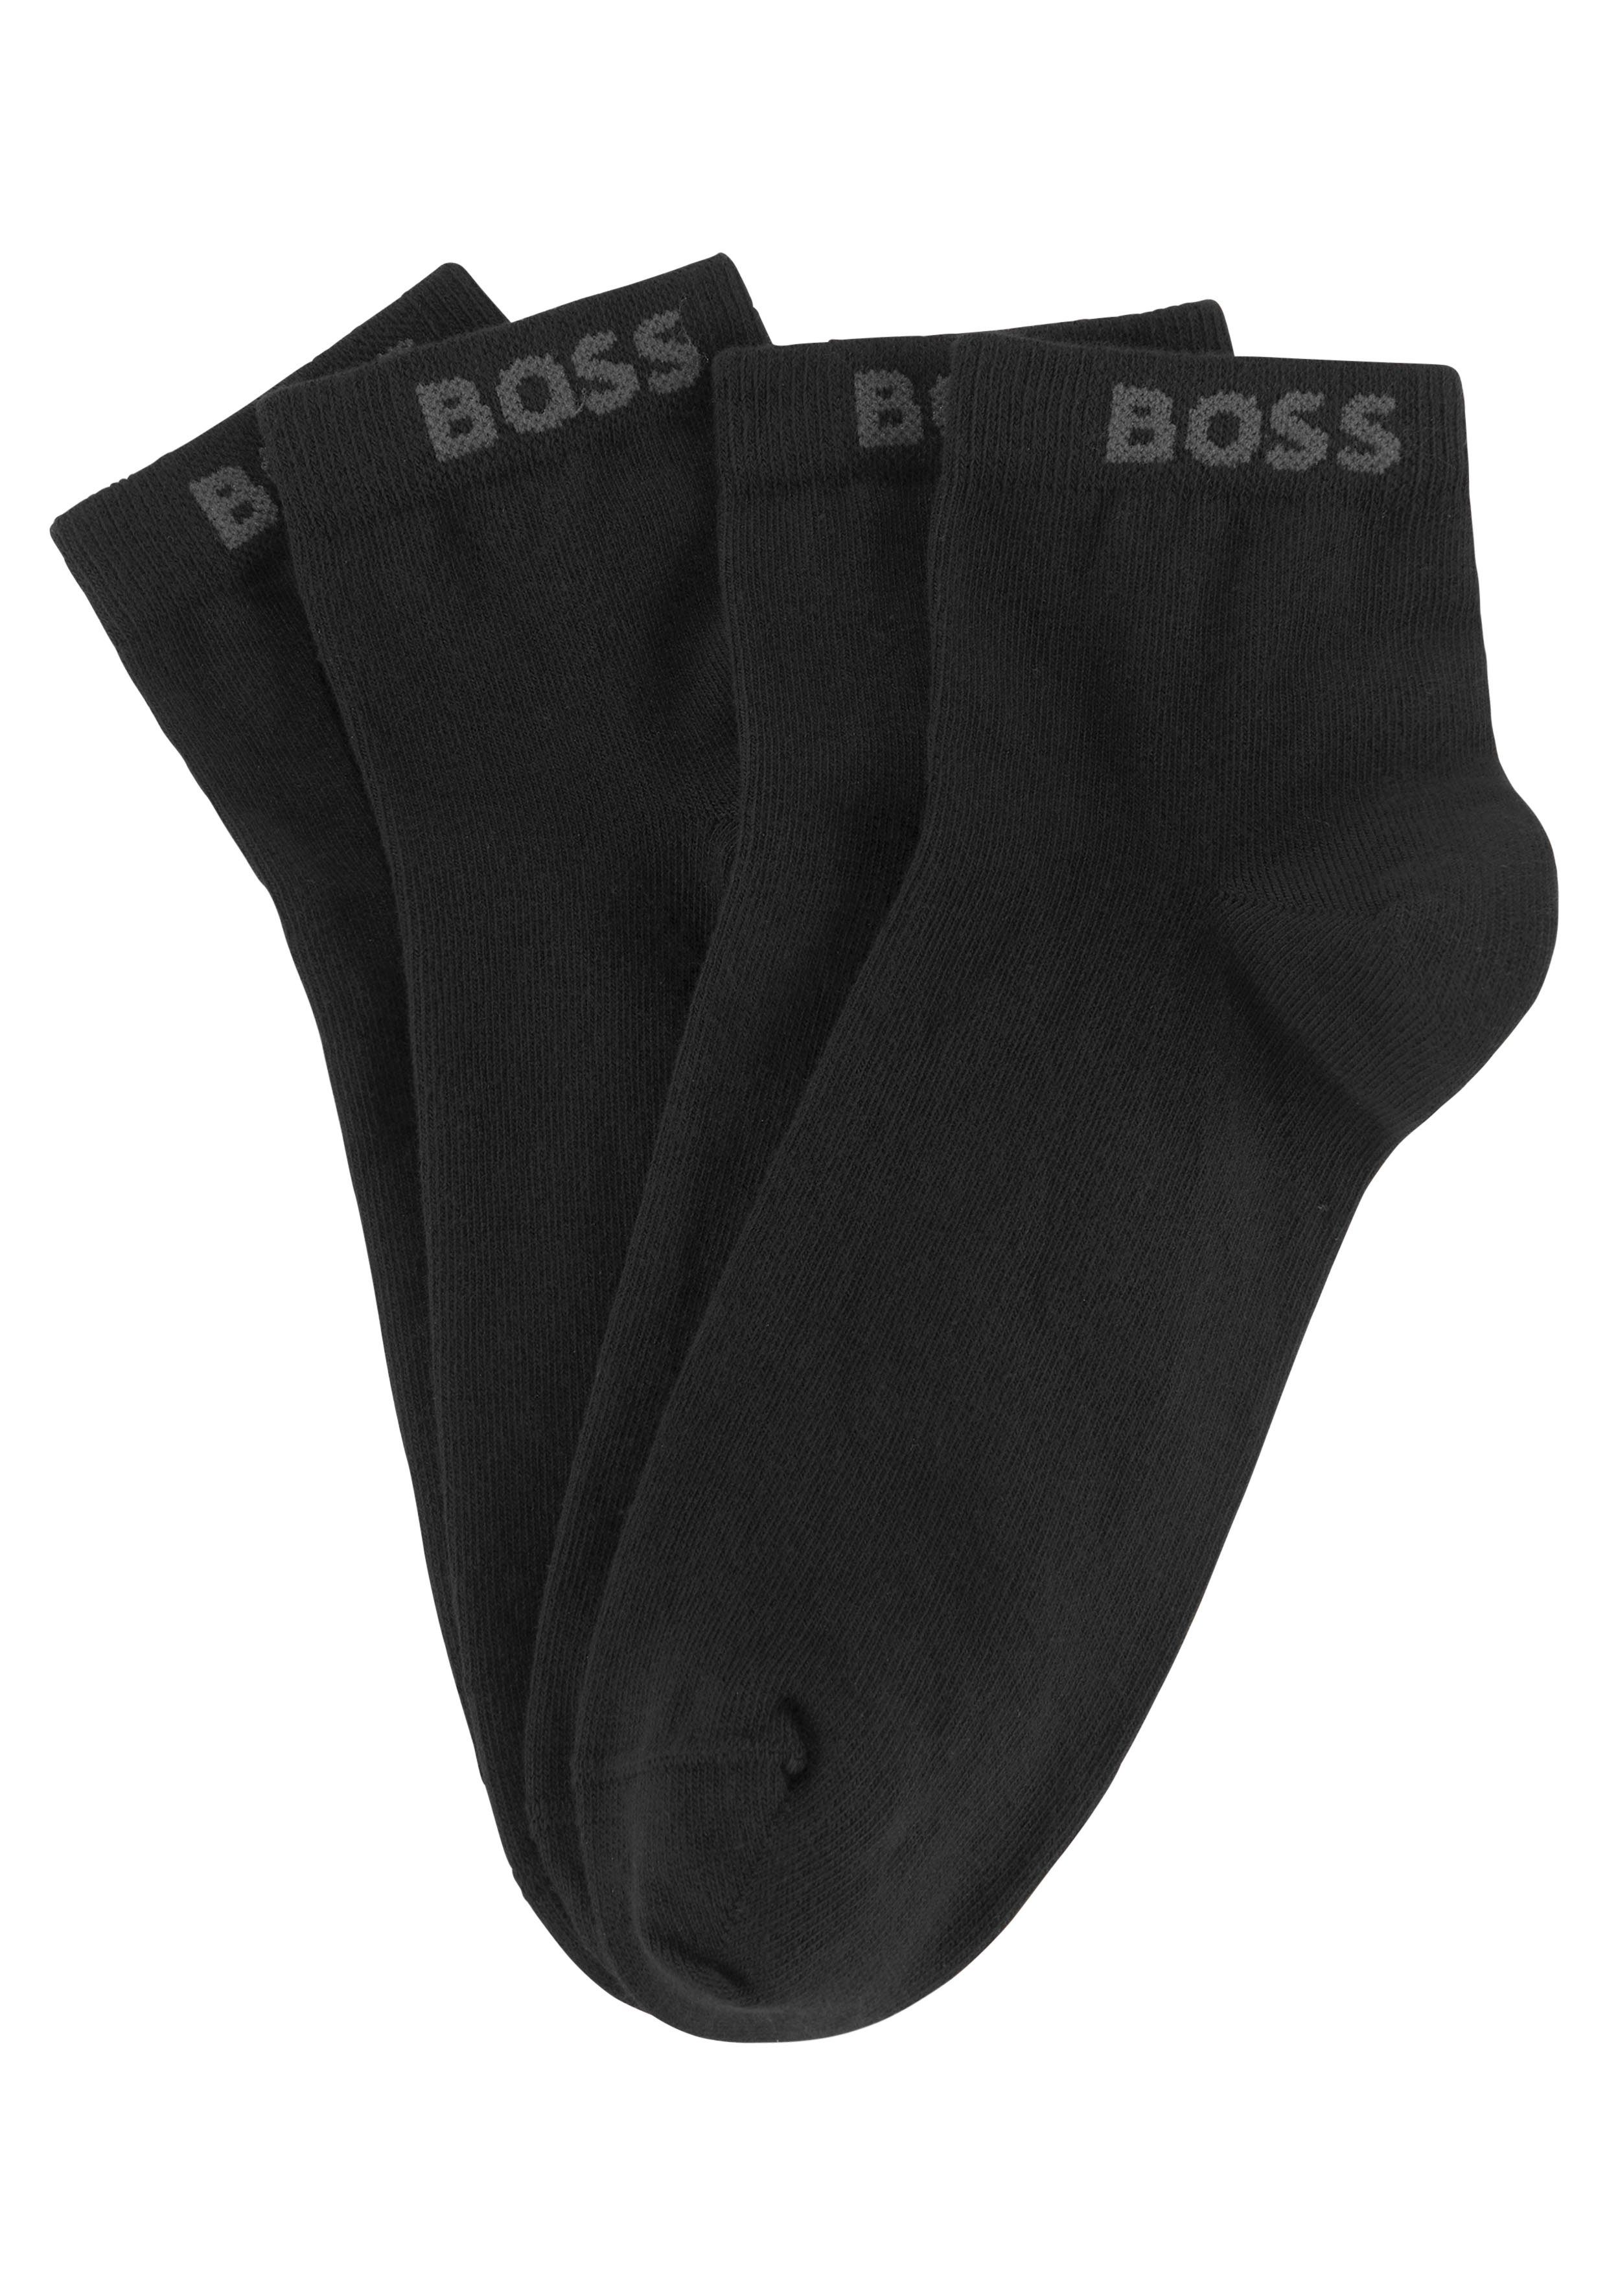 Von der Marke direkt geführter Laden BOSS Sneakersocken (Set, 2-Paar) mit eingenähtem schwarz Markenschriftzug